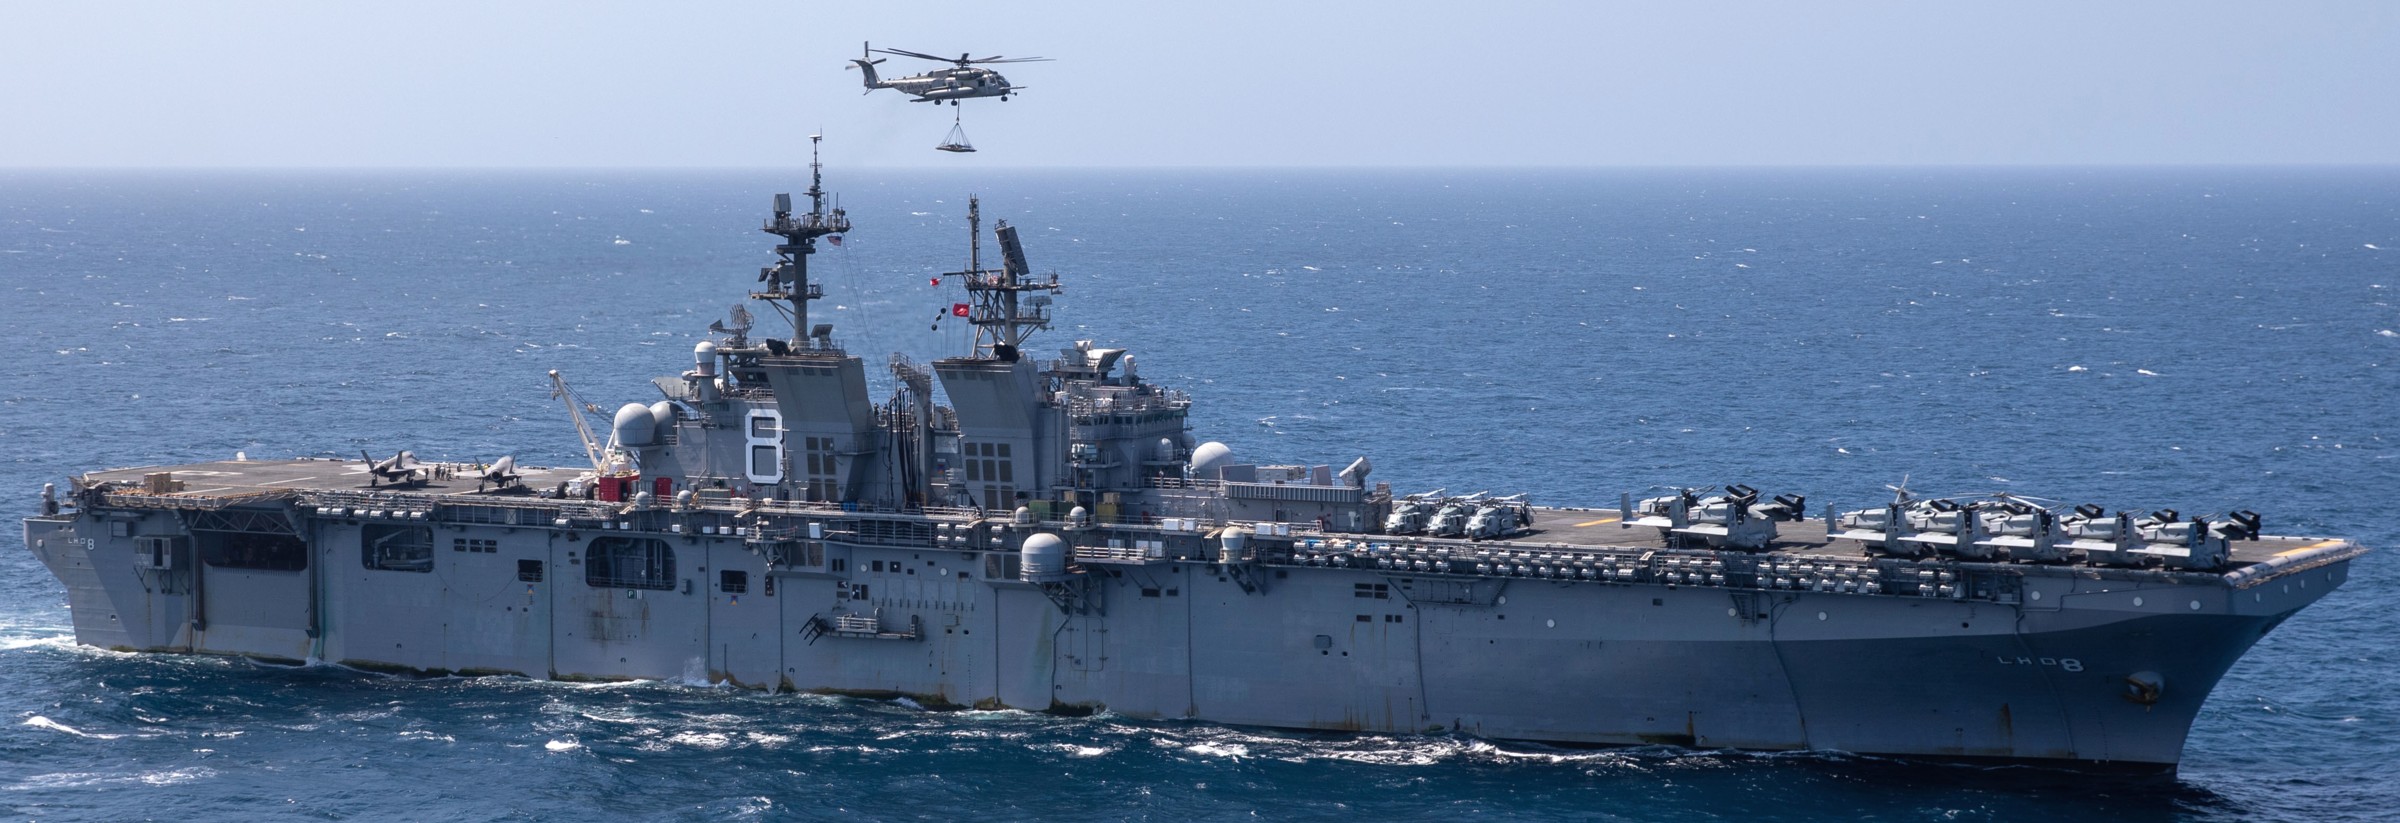 lhd-8 uss makin island amphibious assault ship landing helicopter dock us navy vmm-164 marines 138